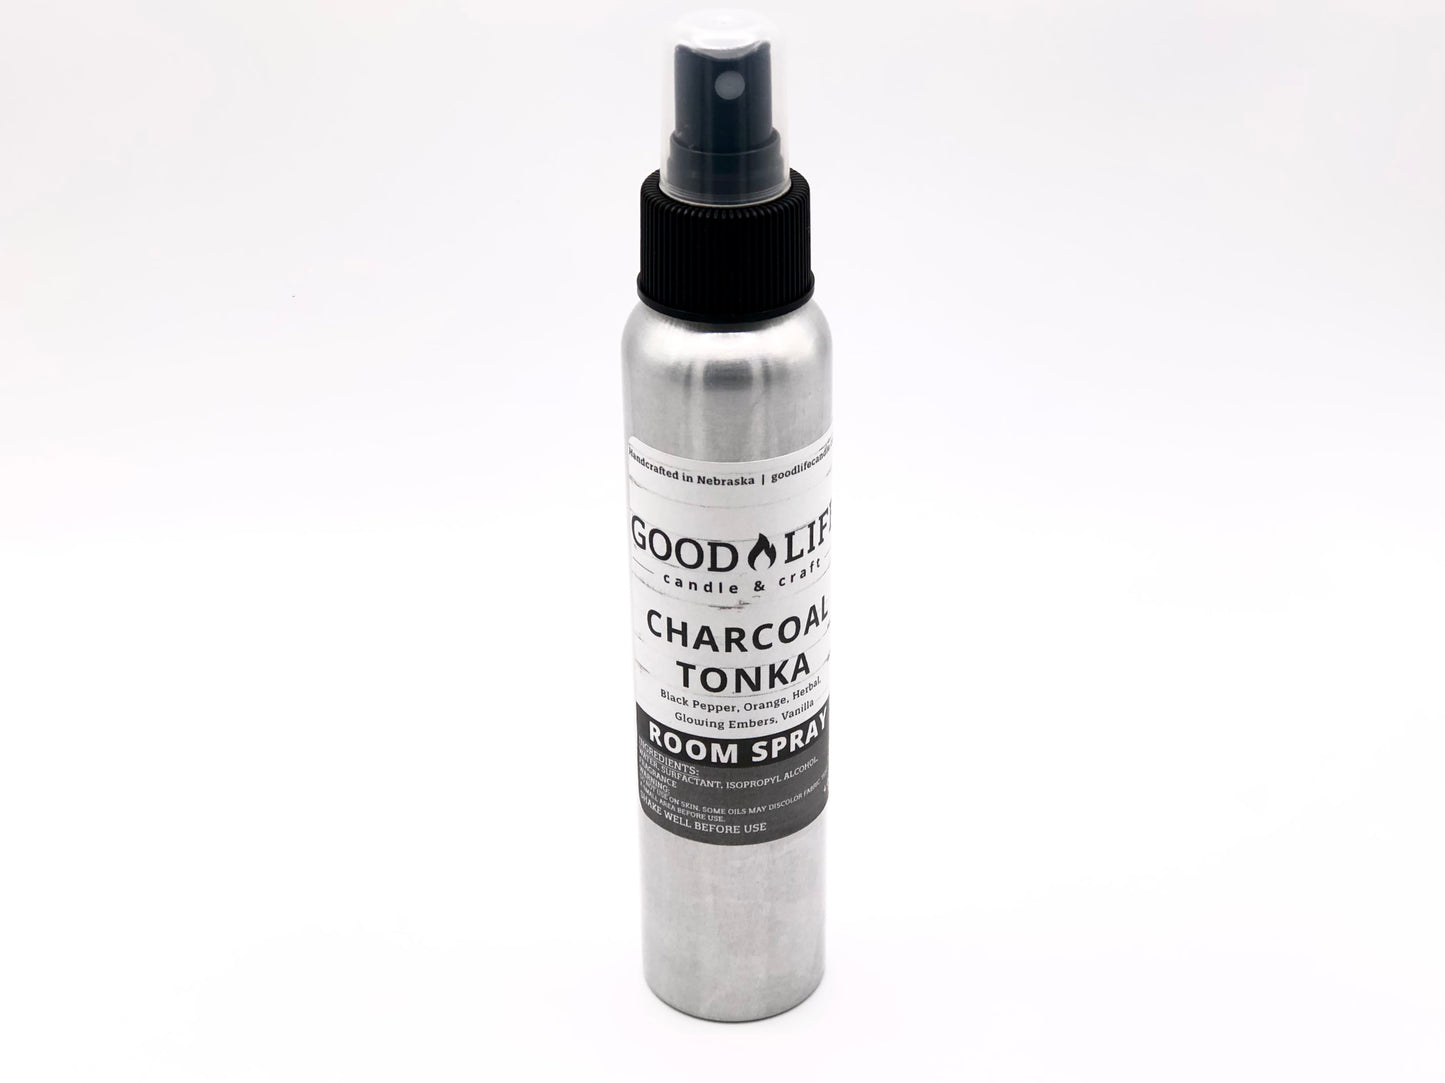 Charcoal Tonka Room & Loo Spray - 4 oz